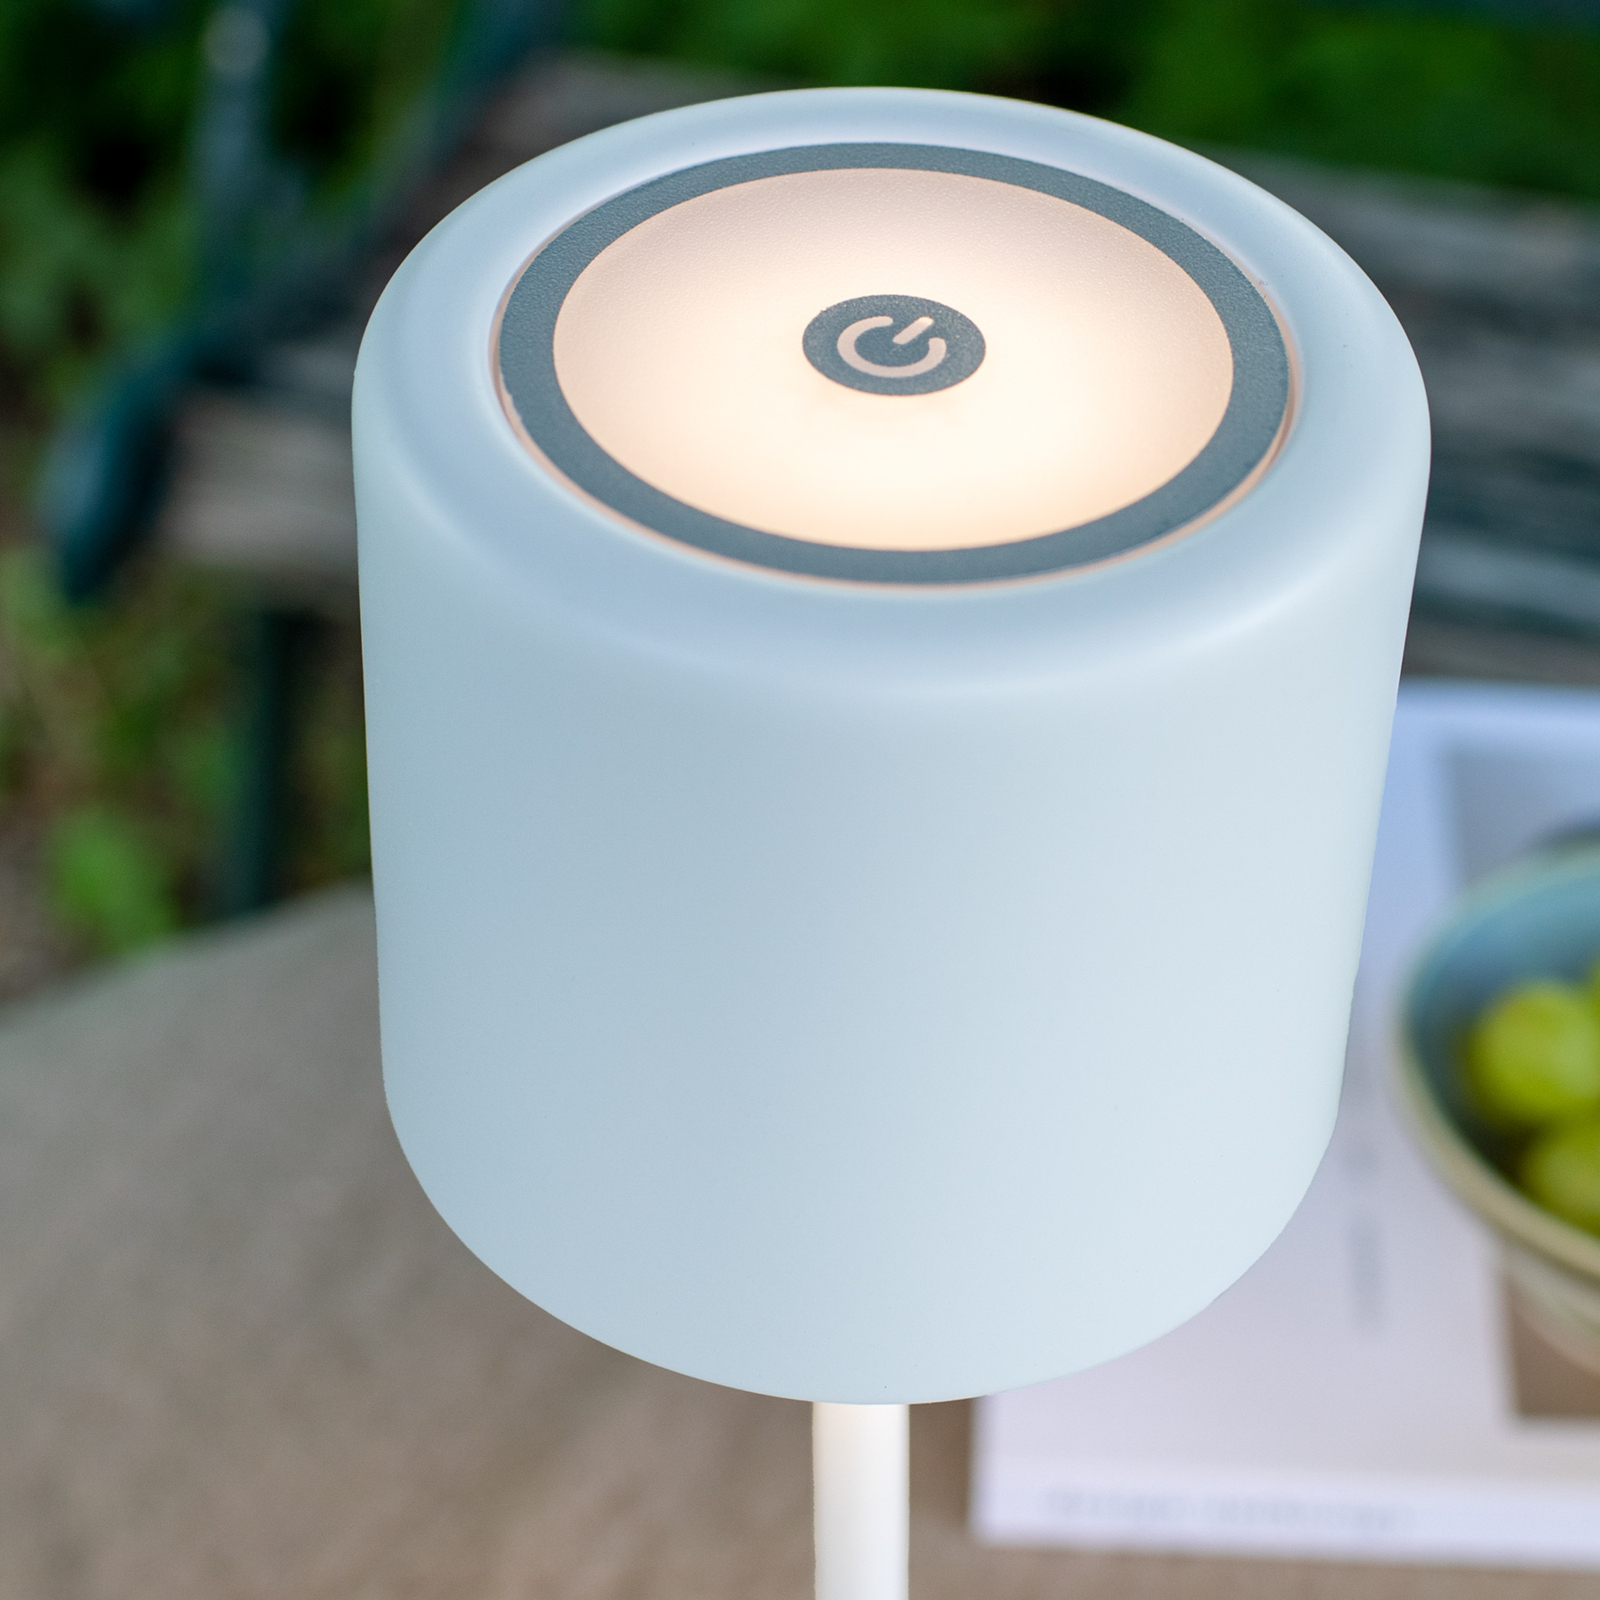 Batteridriven bordslampa Filo för utomhus, vit